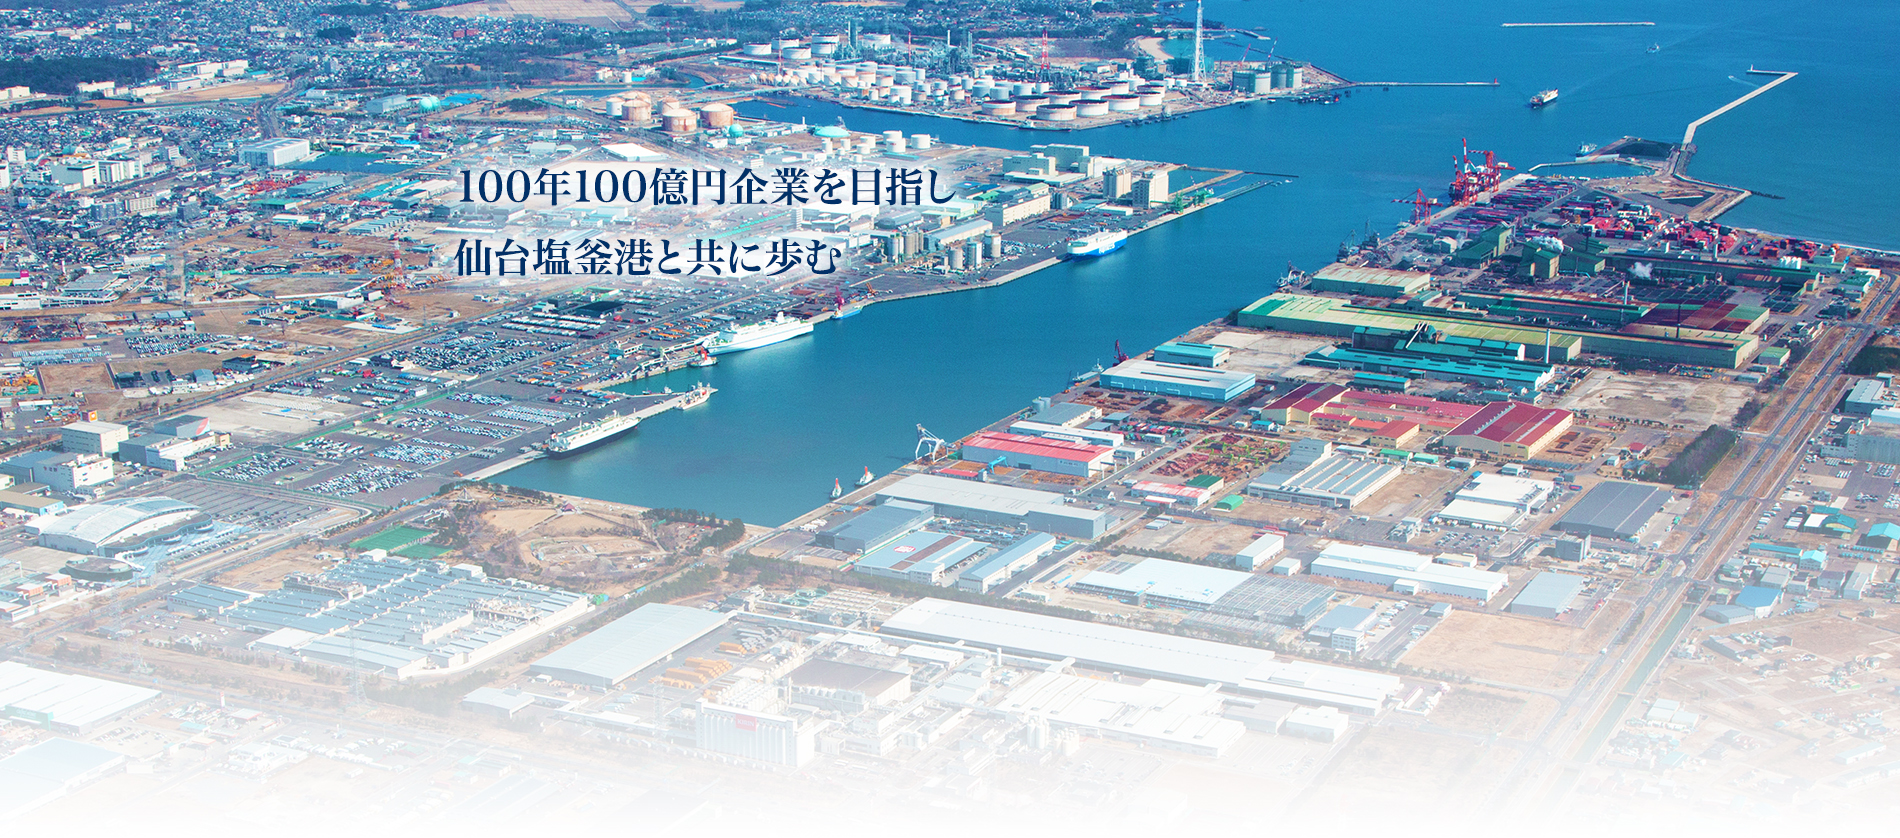 100年100億円企業を目指し仙台塩釜港と共に歩む